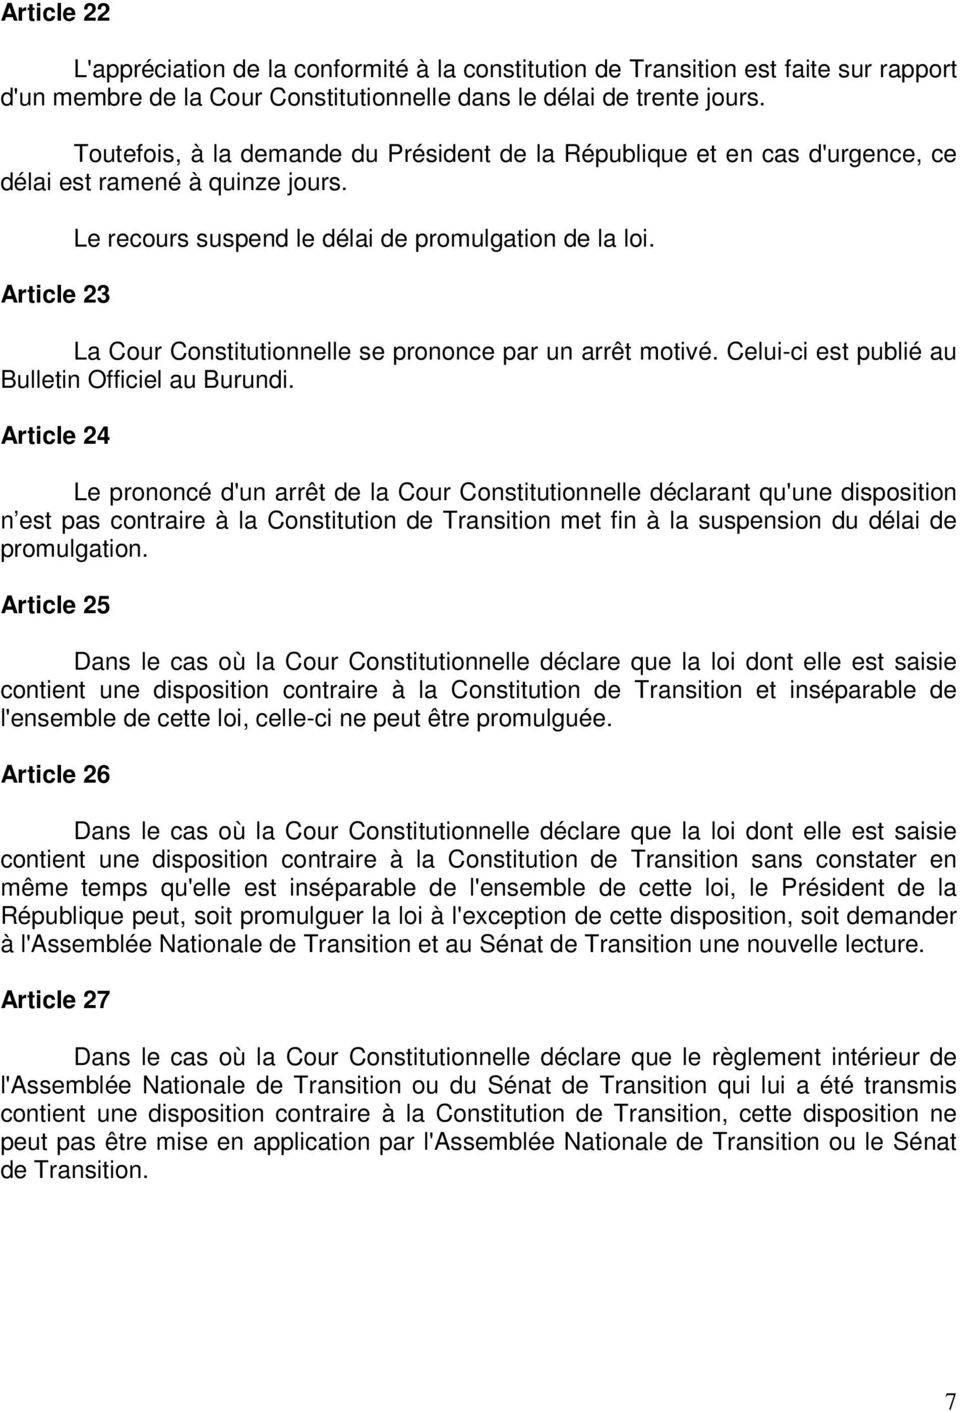 La Cour Constitutionnelle se prononce par un arrêt motivé. Celui-ci est publié au Bulletin Officiel au Burundi.